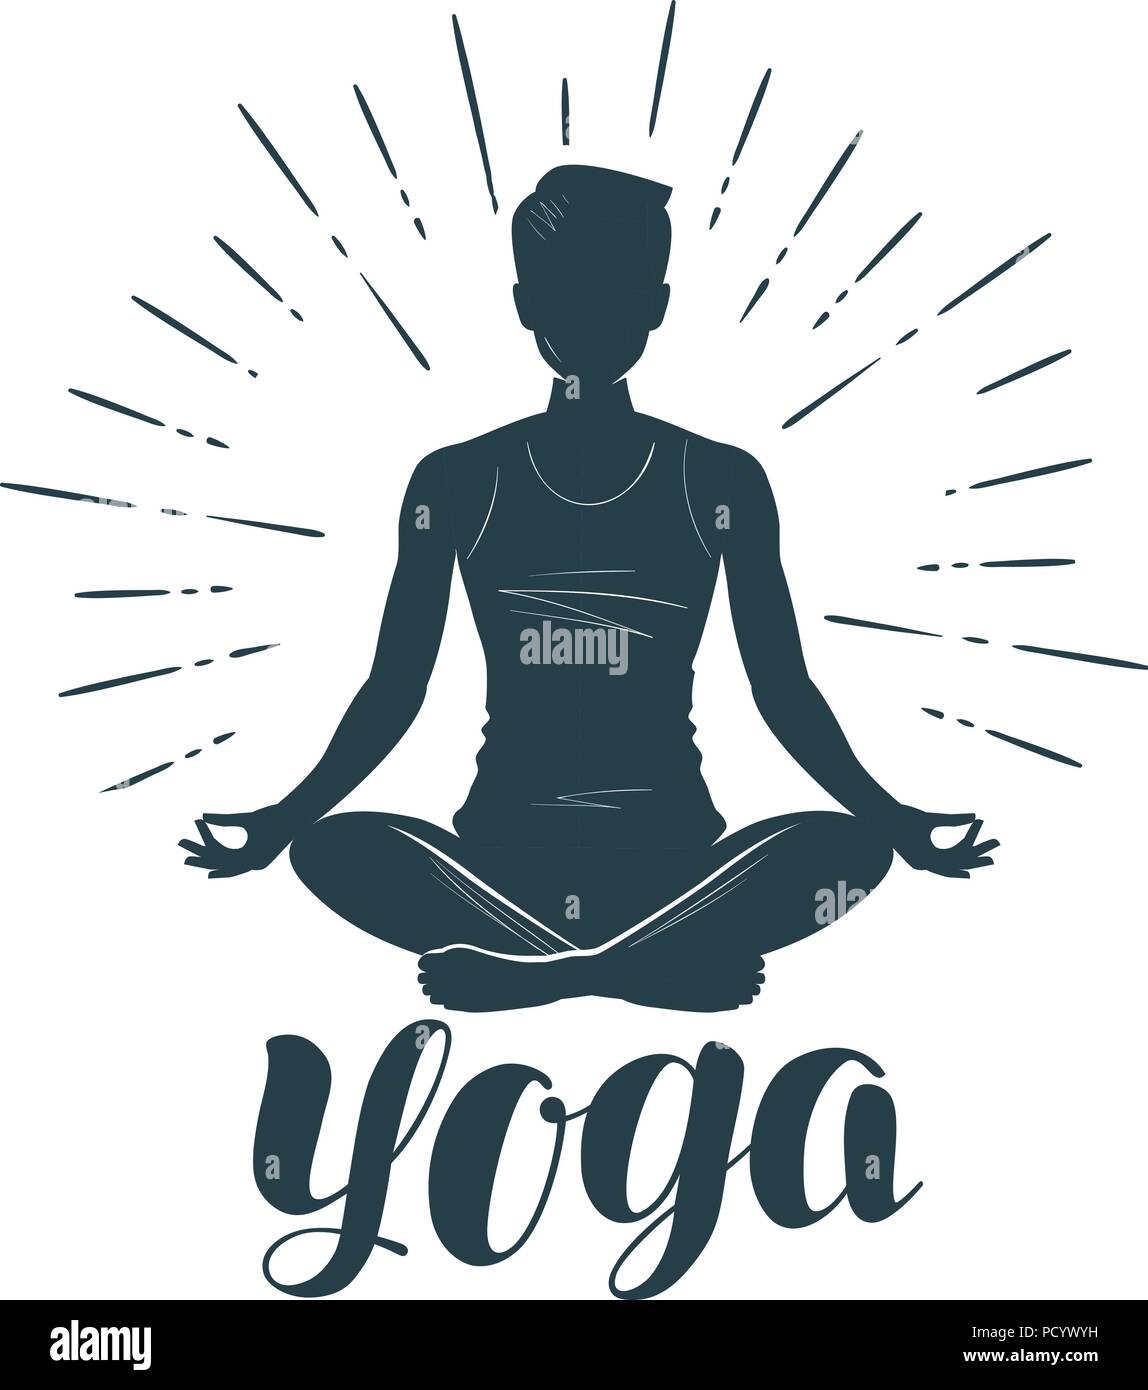 Yoga Logo Immagini E Fotos Stock Alamy